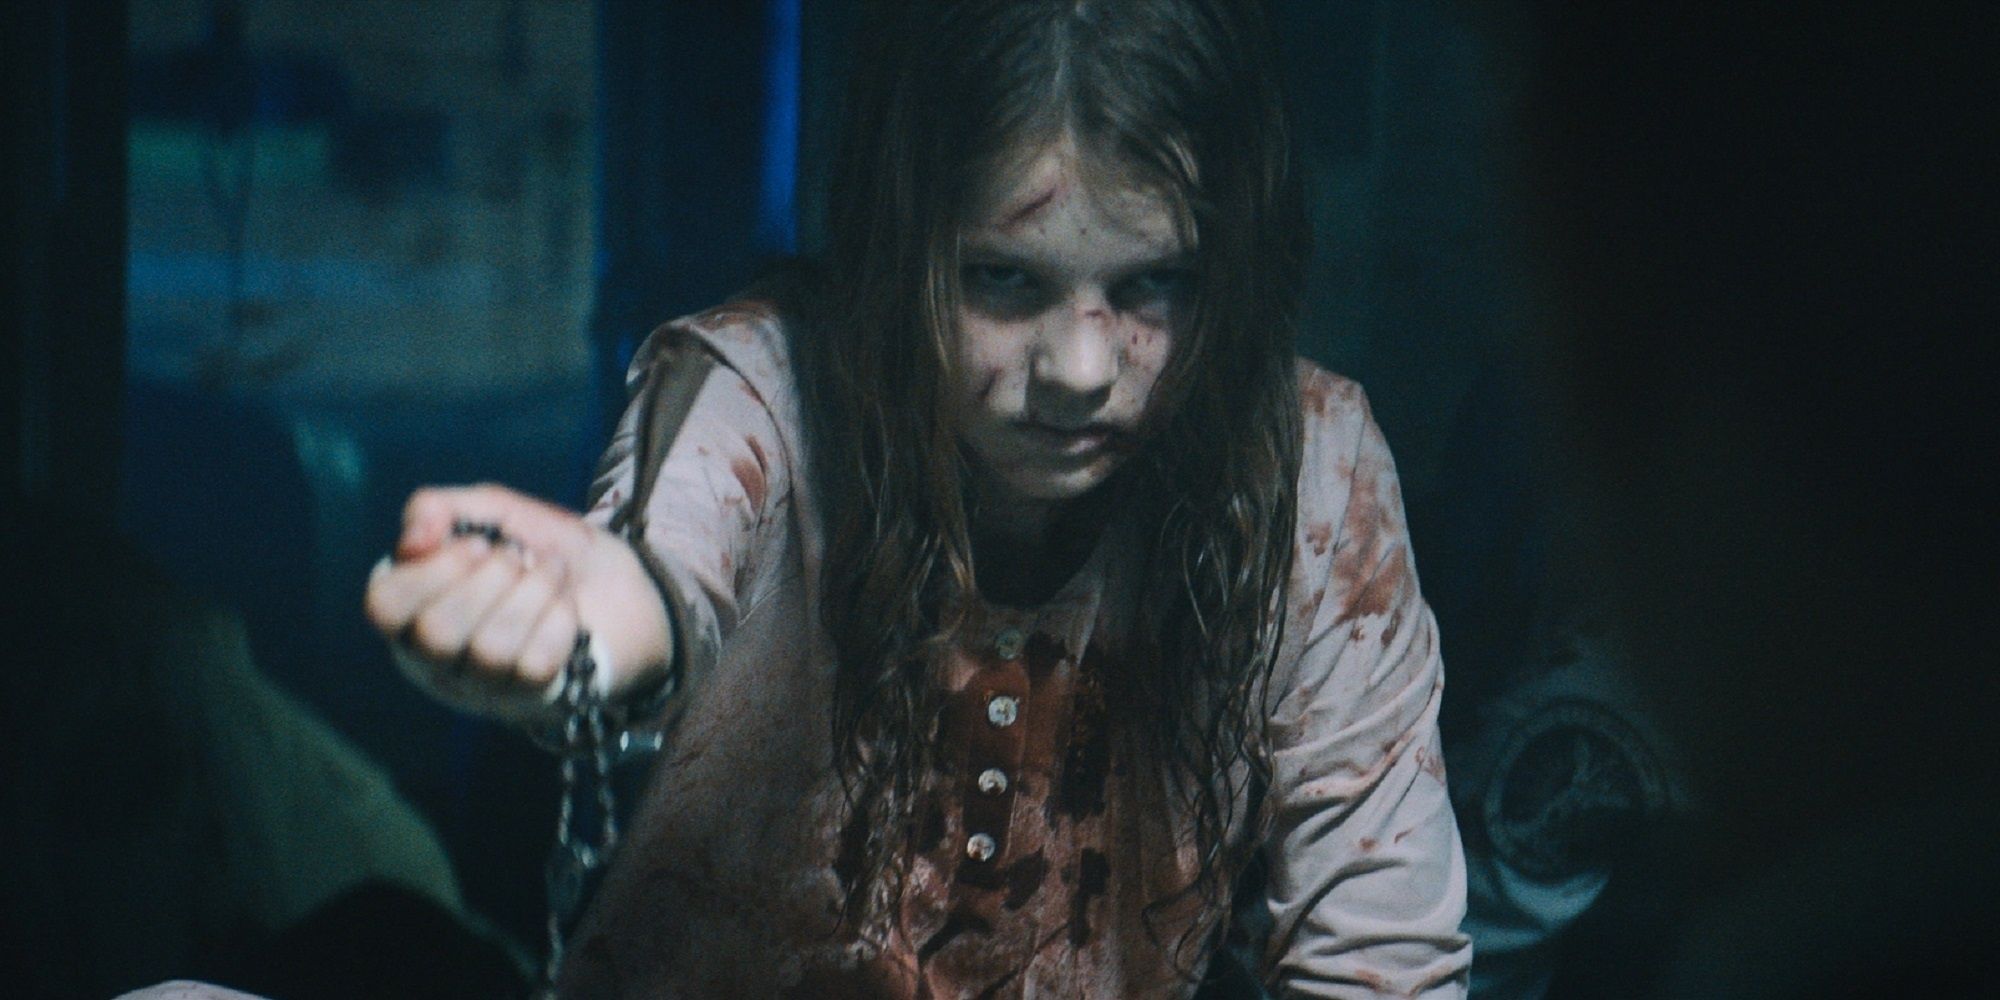 '악마의 먹이'에서 묵주를 들고 피에 멍이 든 어린 소녀.